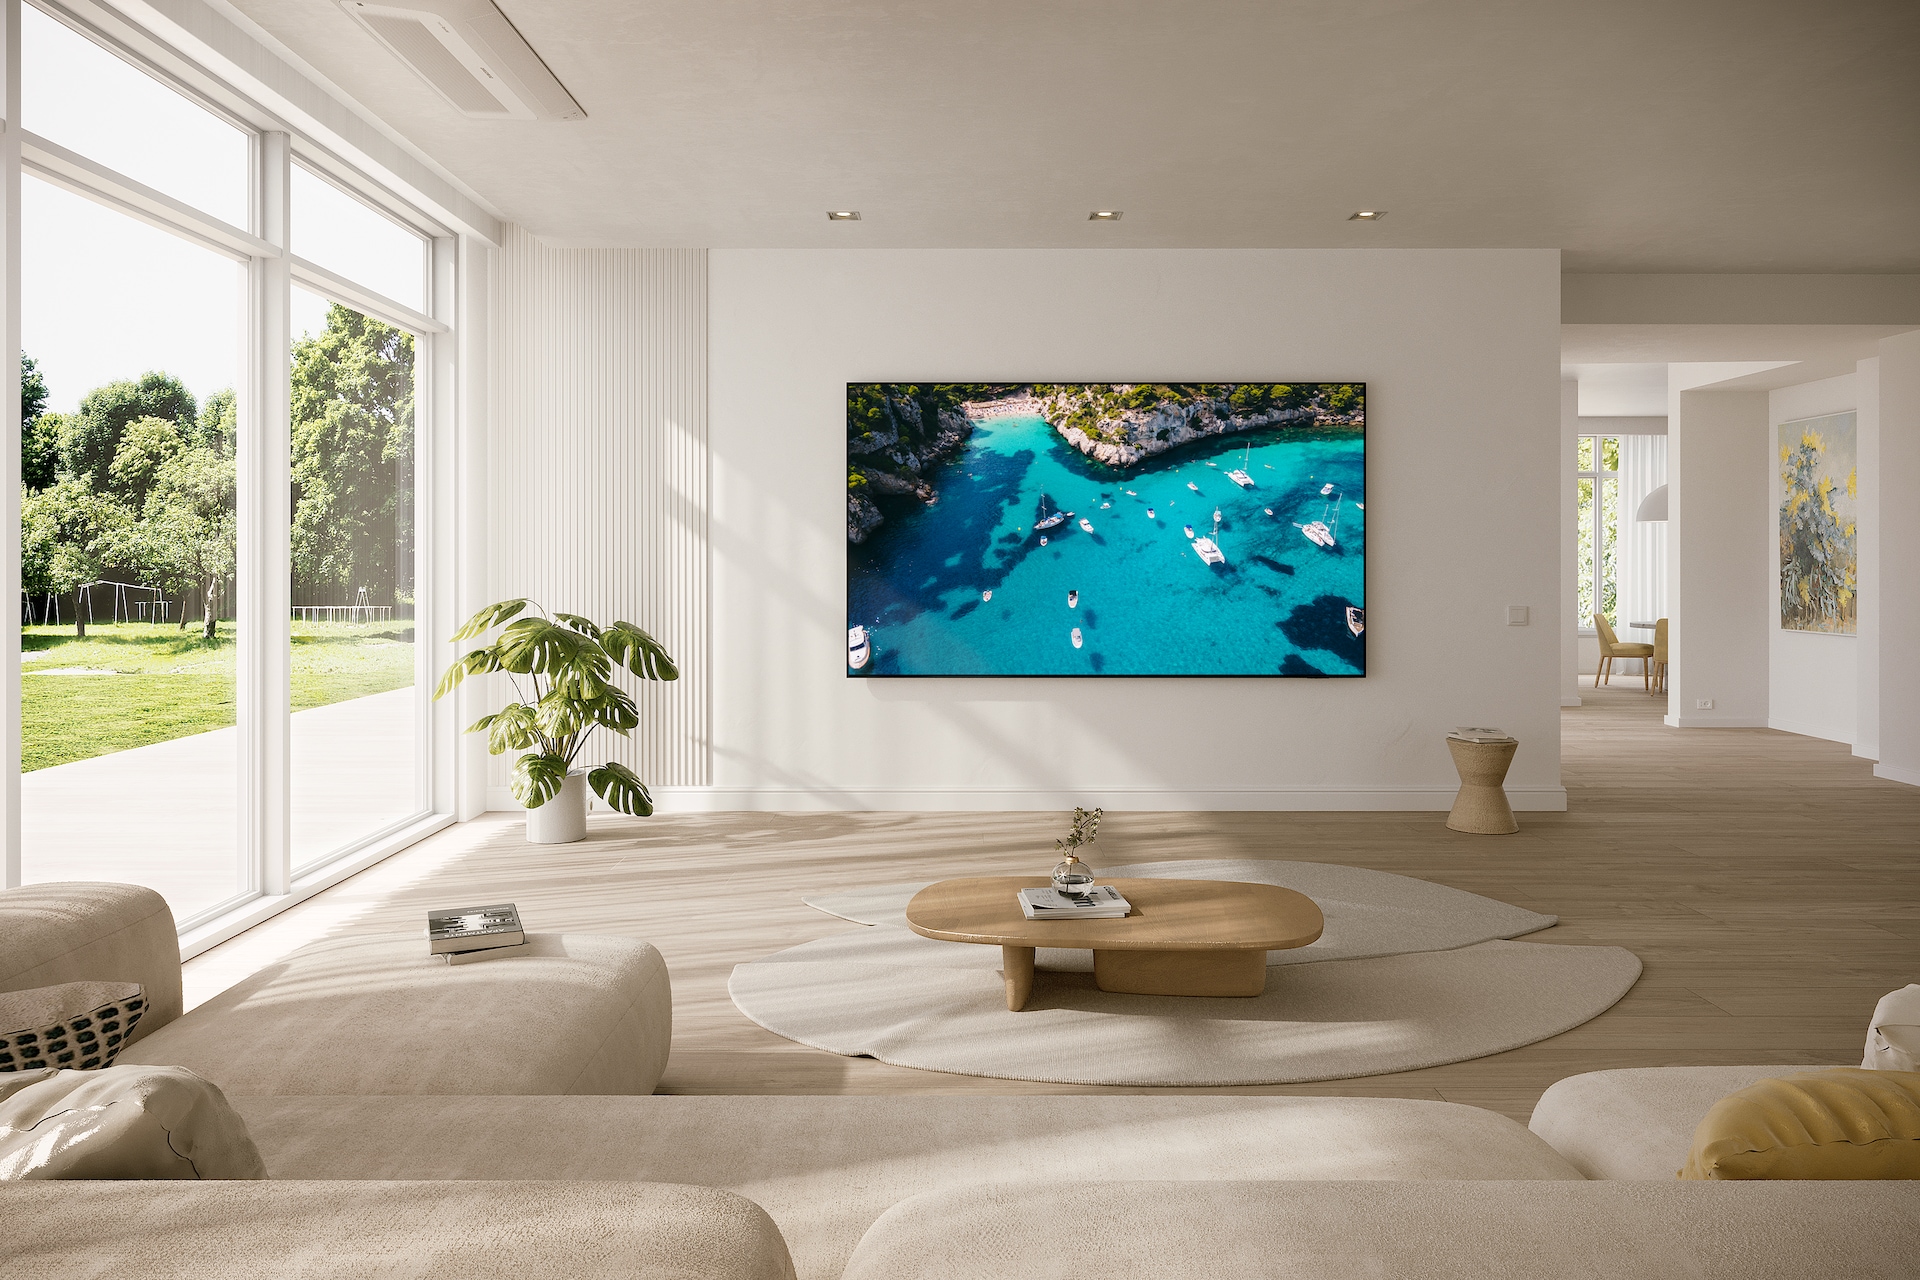 거실 벽에 TV가 설치되어 있으며, 화면에는 바다가 보입니다. TV 앞에는 테이블과 소파가 있습니다. 왼쪽 창으로는 나무가 보이는 라이프스타일컷입니다.